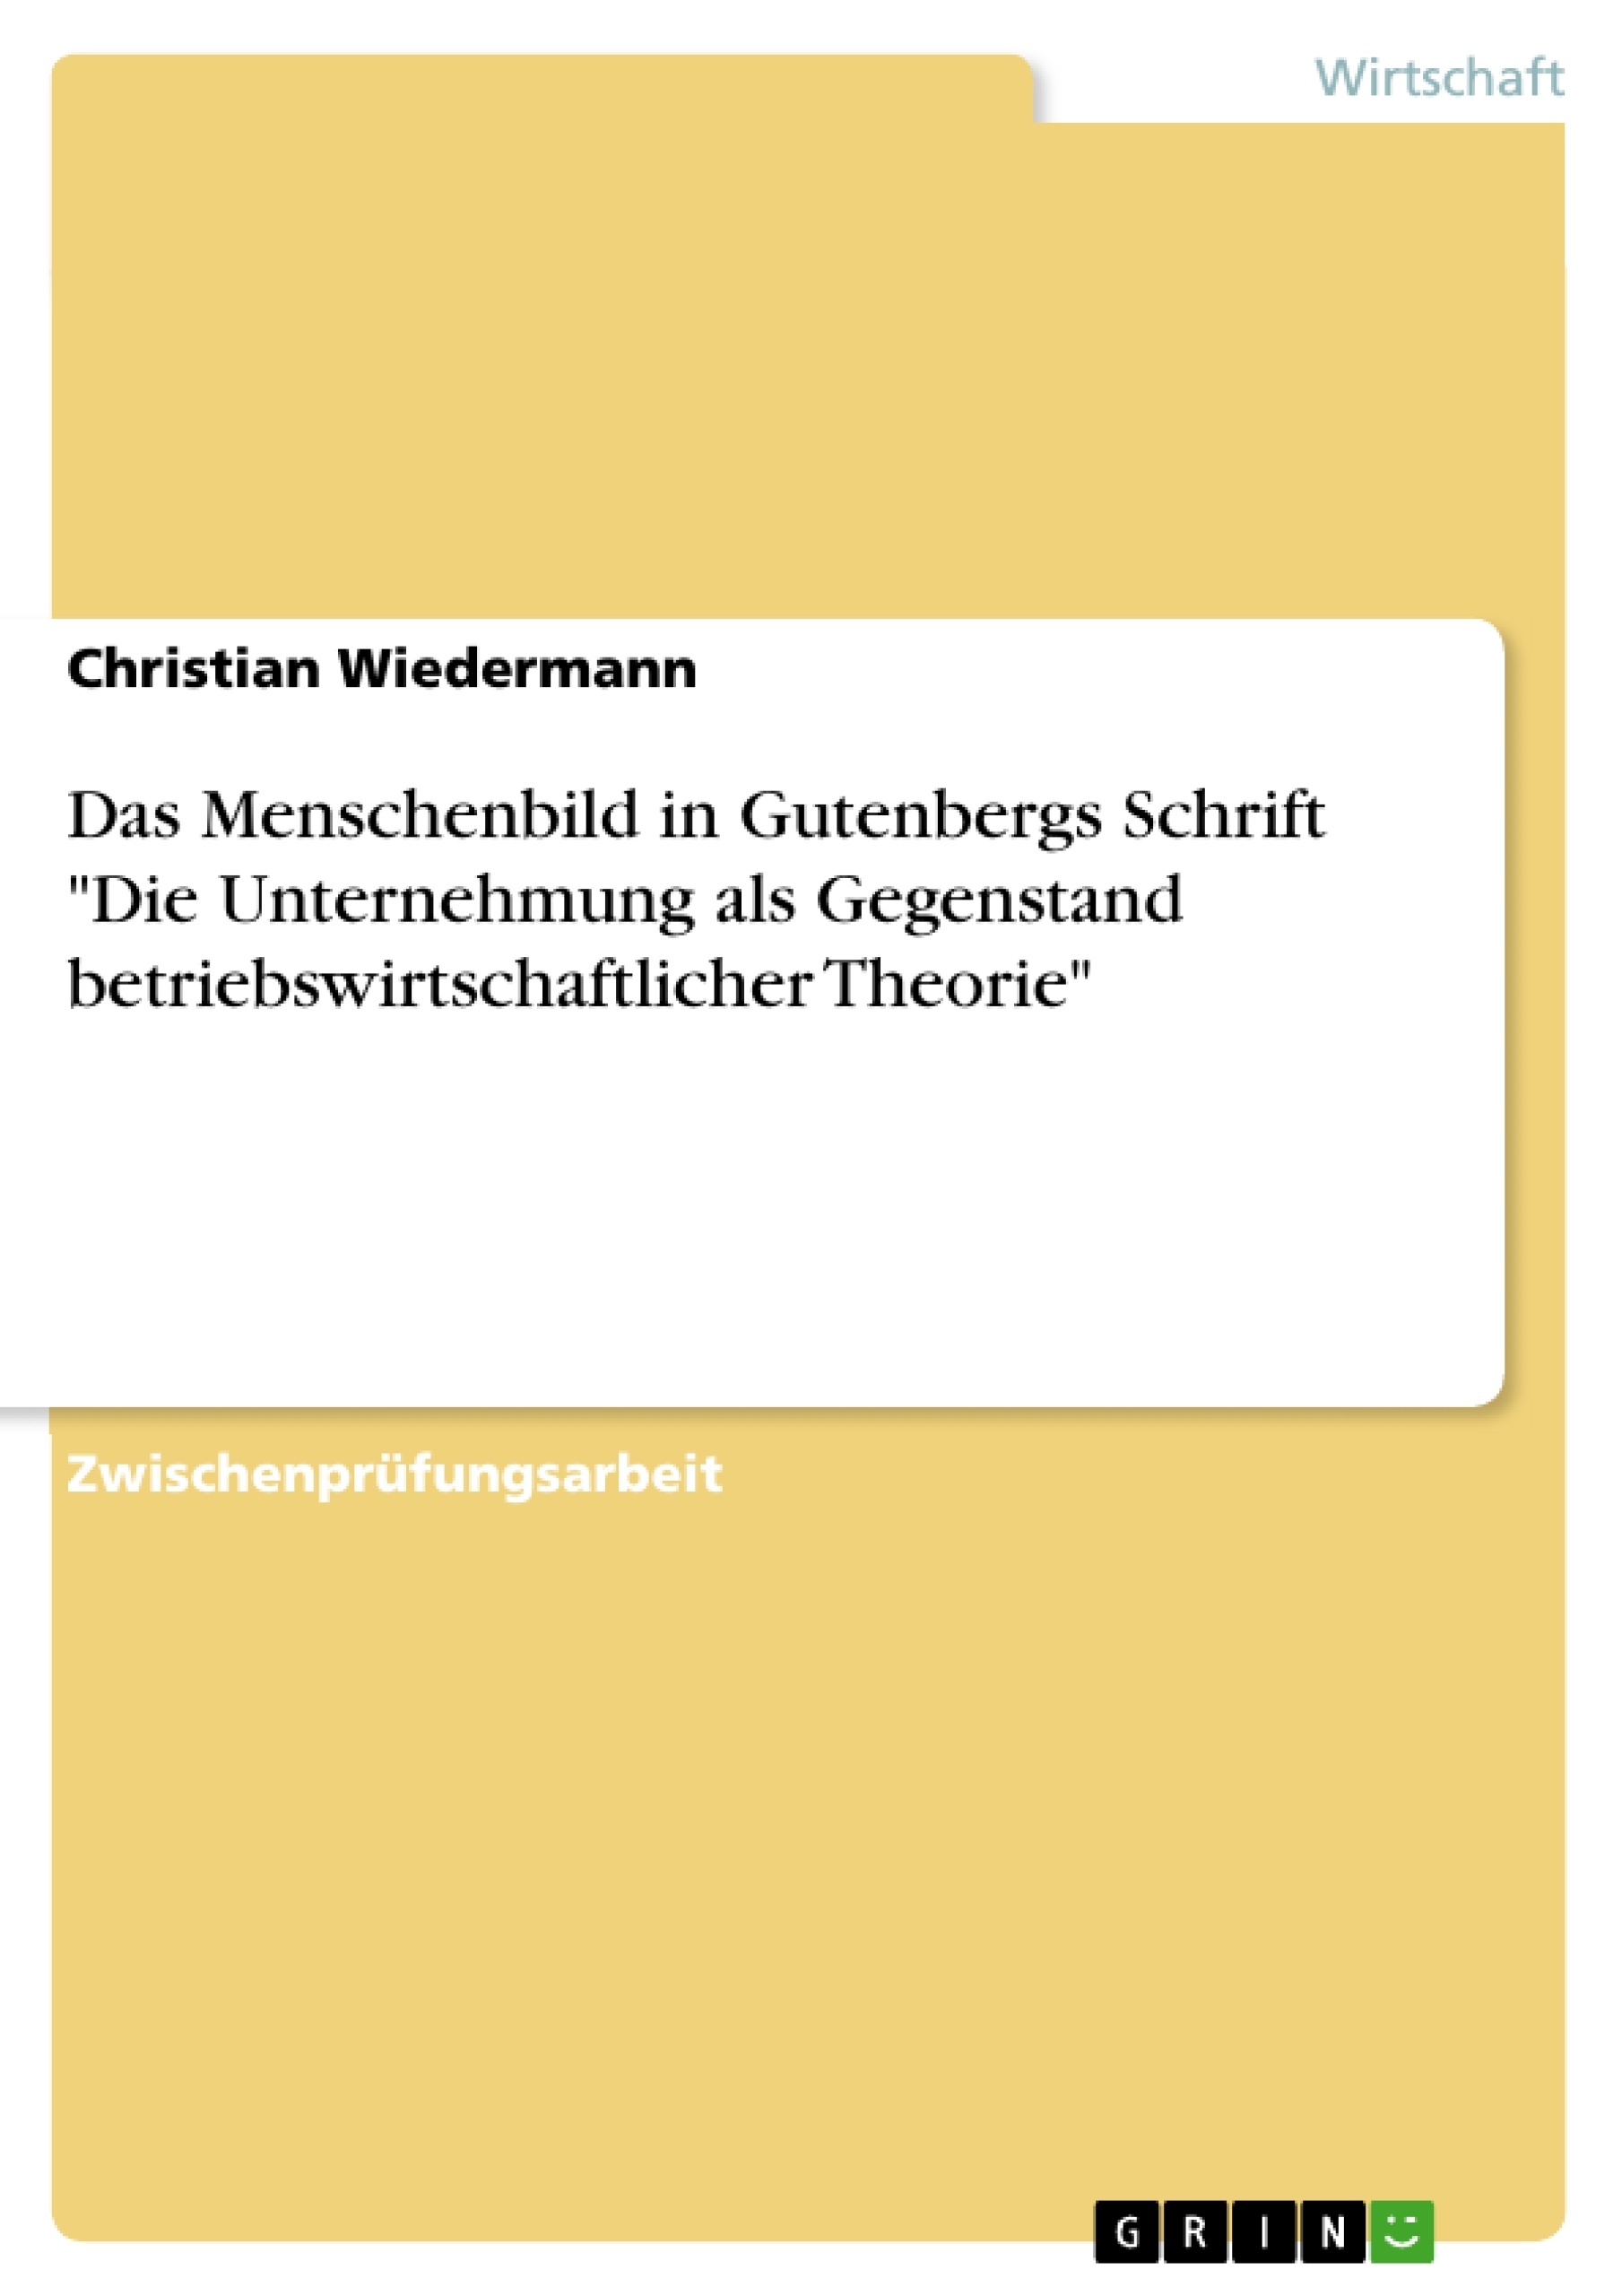 Title: Das Menschenbild in Gutenbergs Schrift "Die Unternehmung als Gegenstand betriebswirtschaftlicher Theorie"